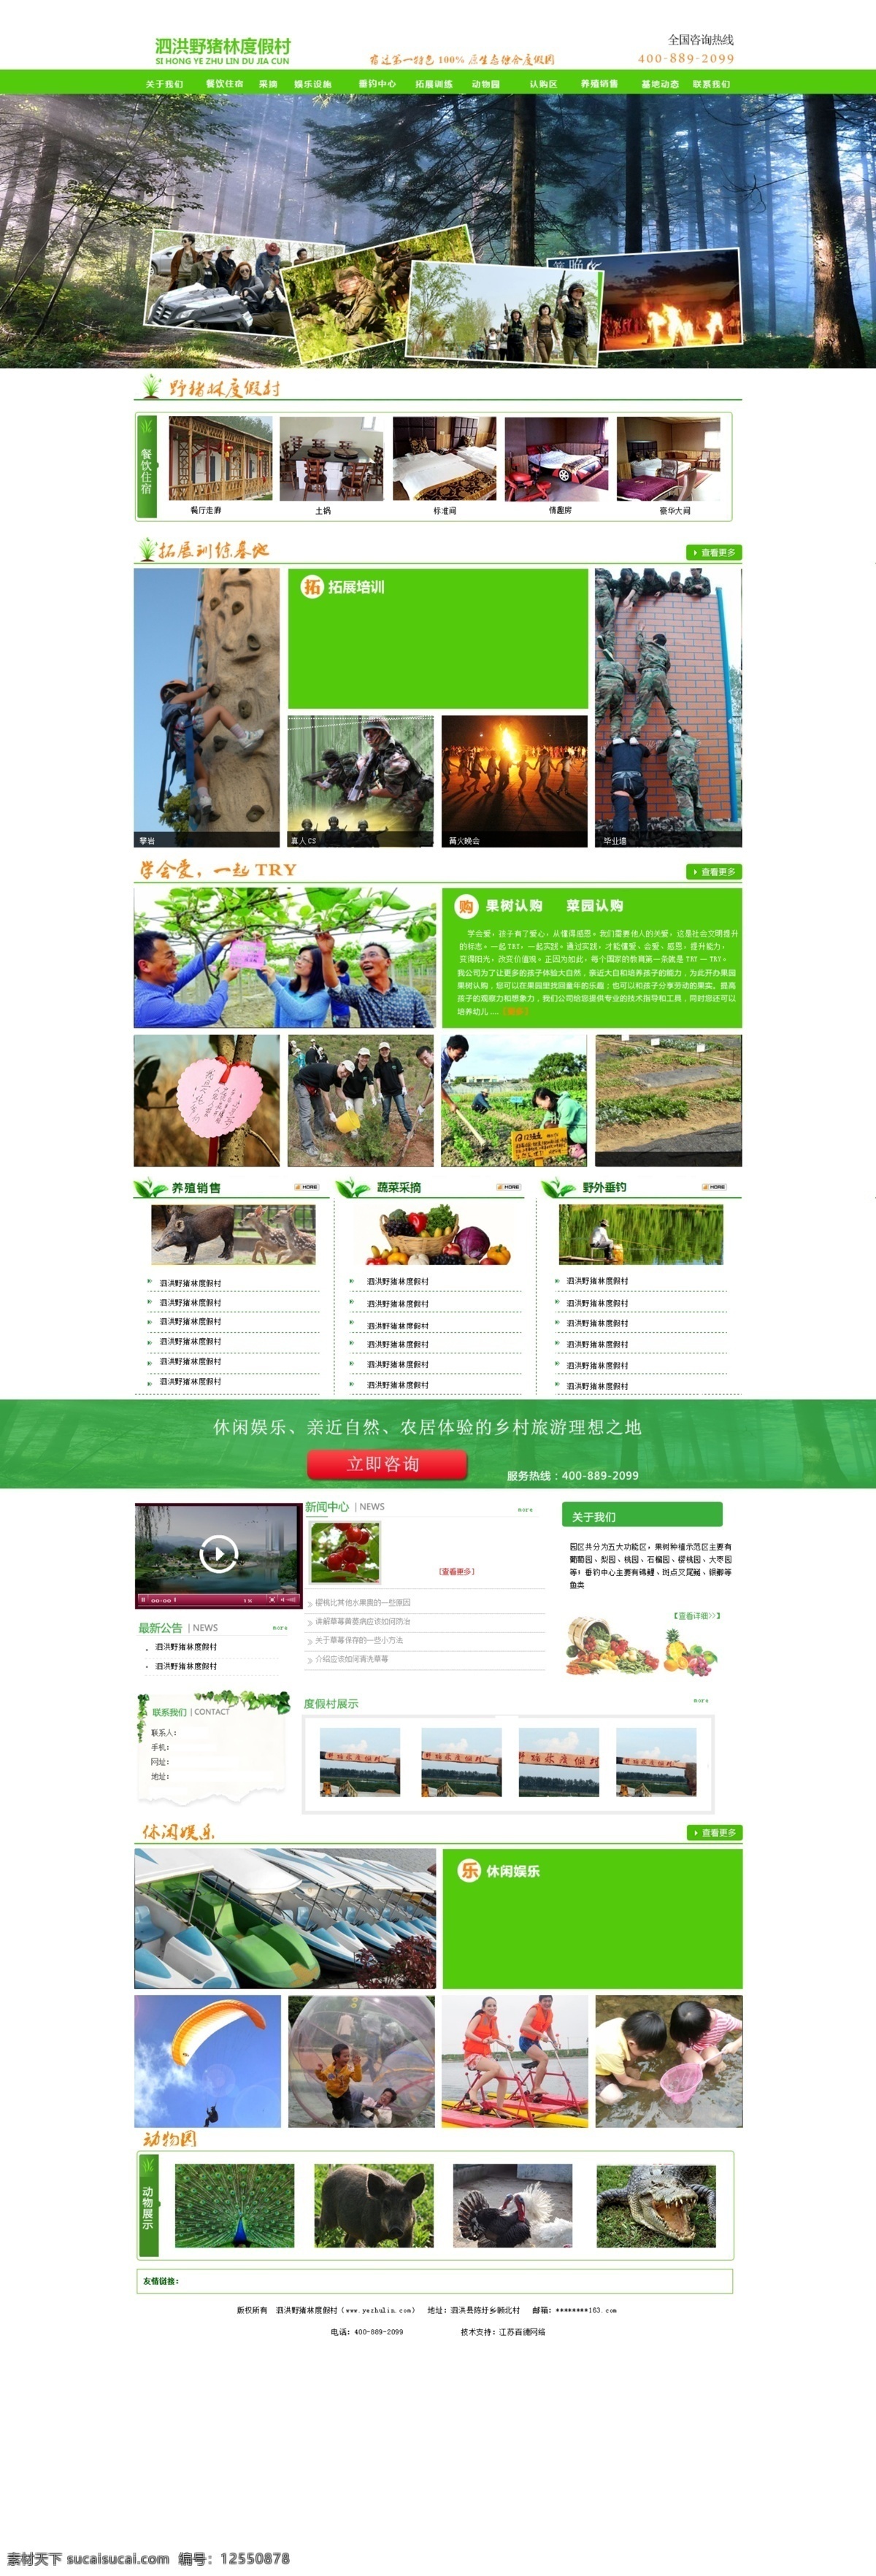 生态 养殖 网站首页 生态养殖 效果图 网站效果图 网站绿色系 白色